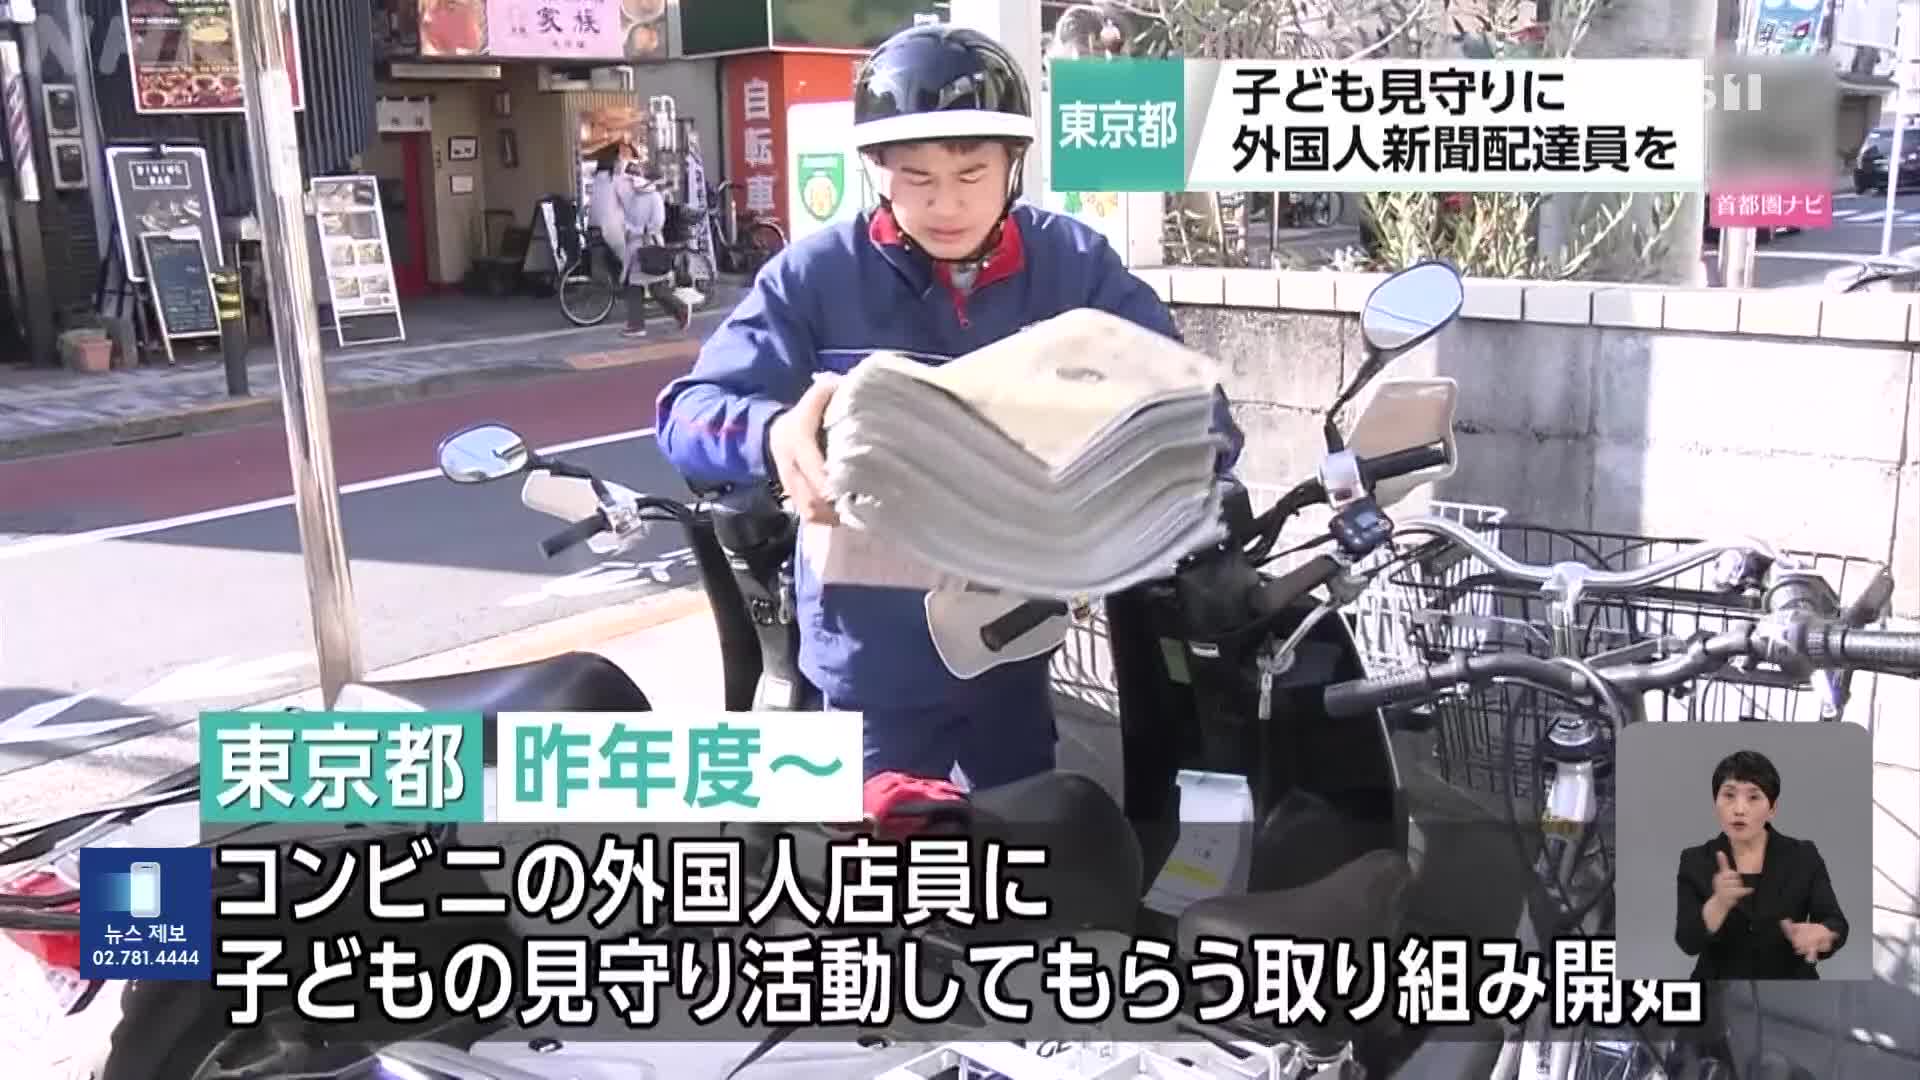 일본, 아동 보호에 외국인 신문 배달원 활용